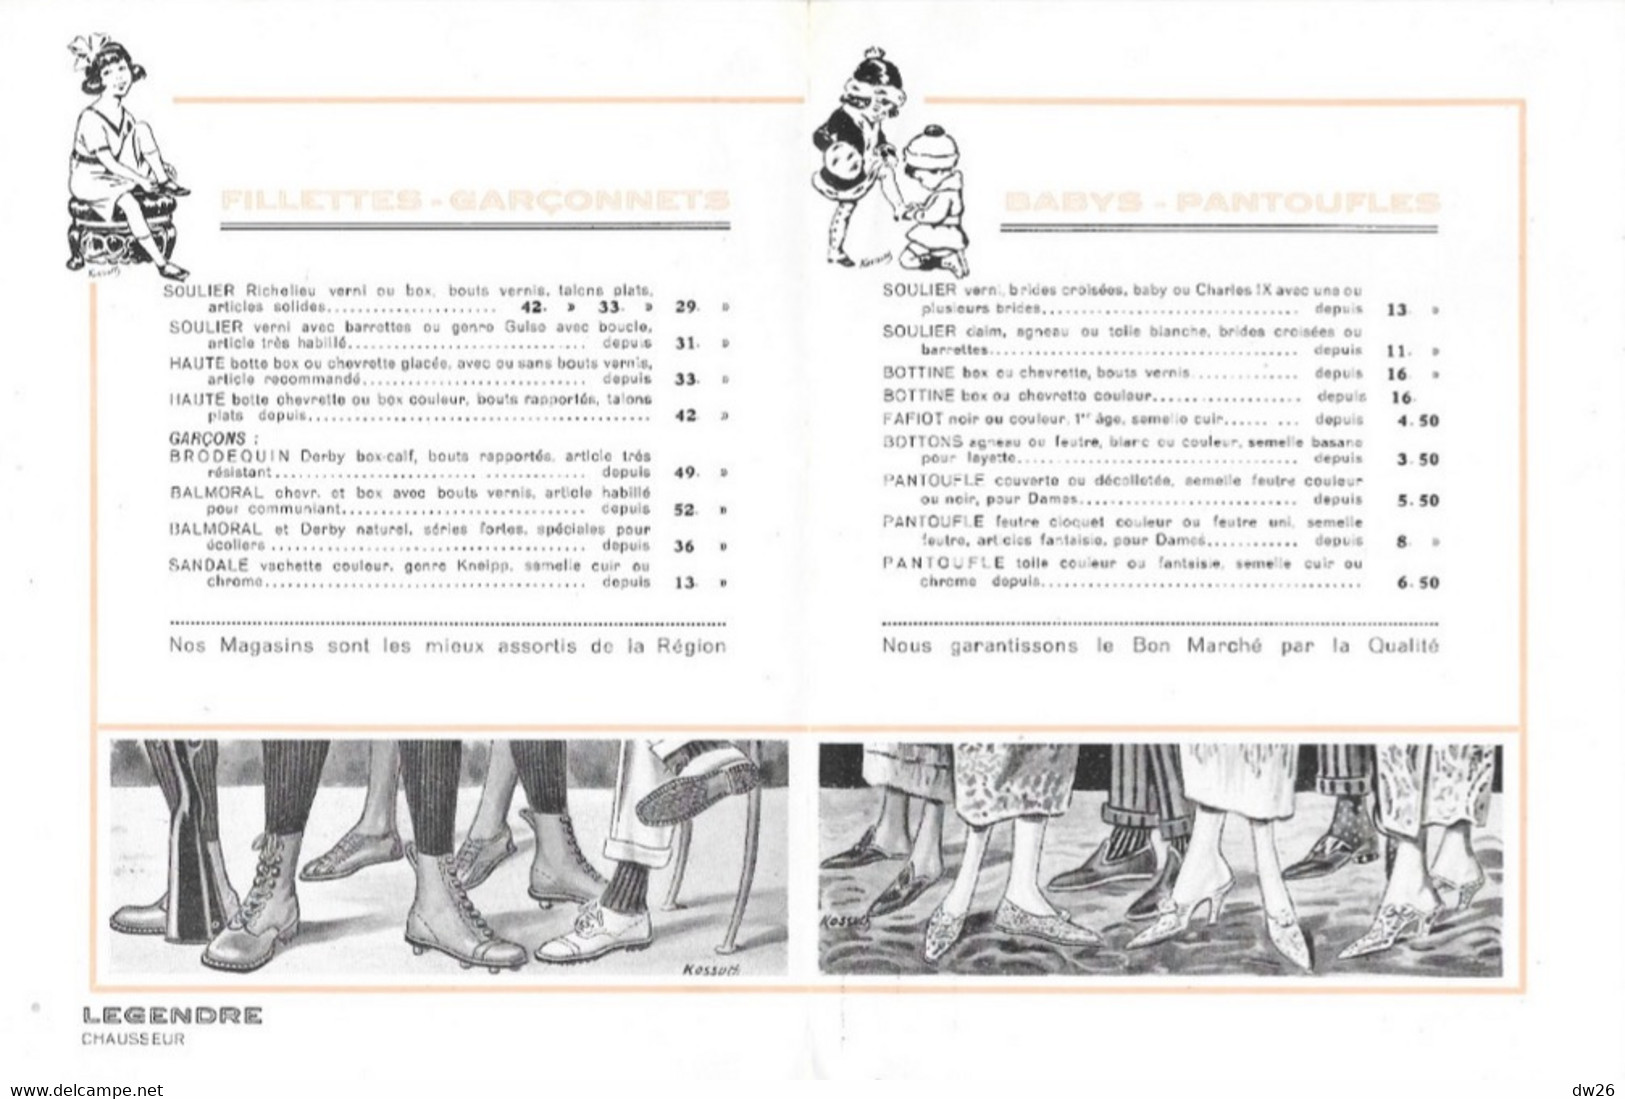 Les Dernières Créations De La Mode - Catalogue Les Chaussures Legendre (Chausseur) Dépliant 8 Pages - Mode